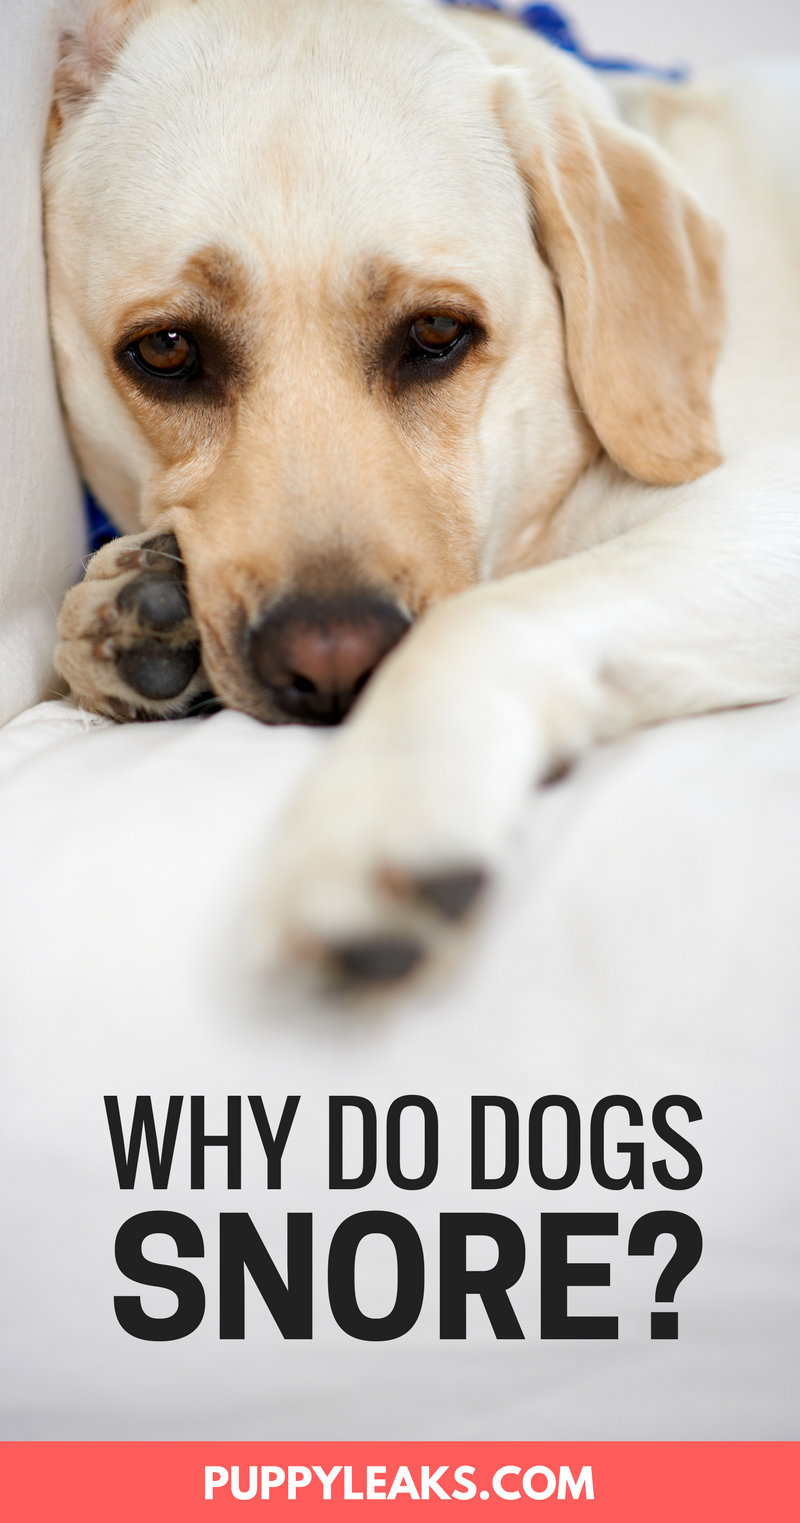 Waarom snurken honden?